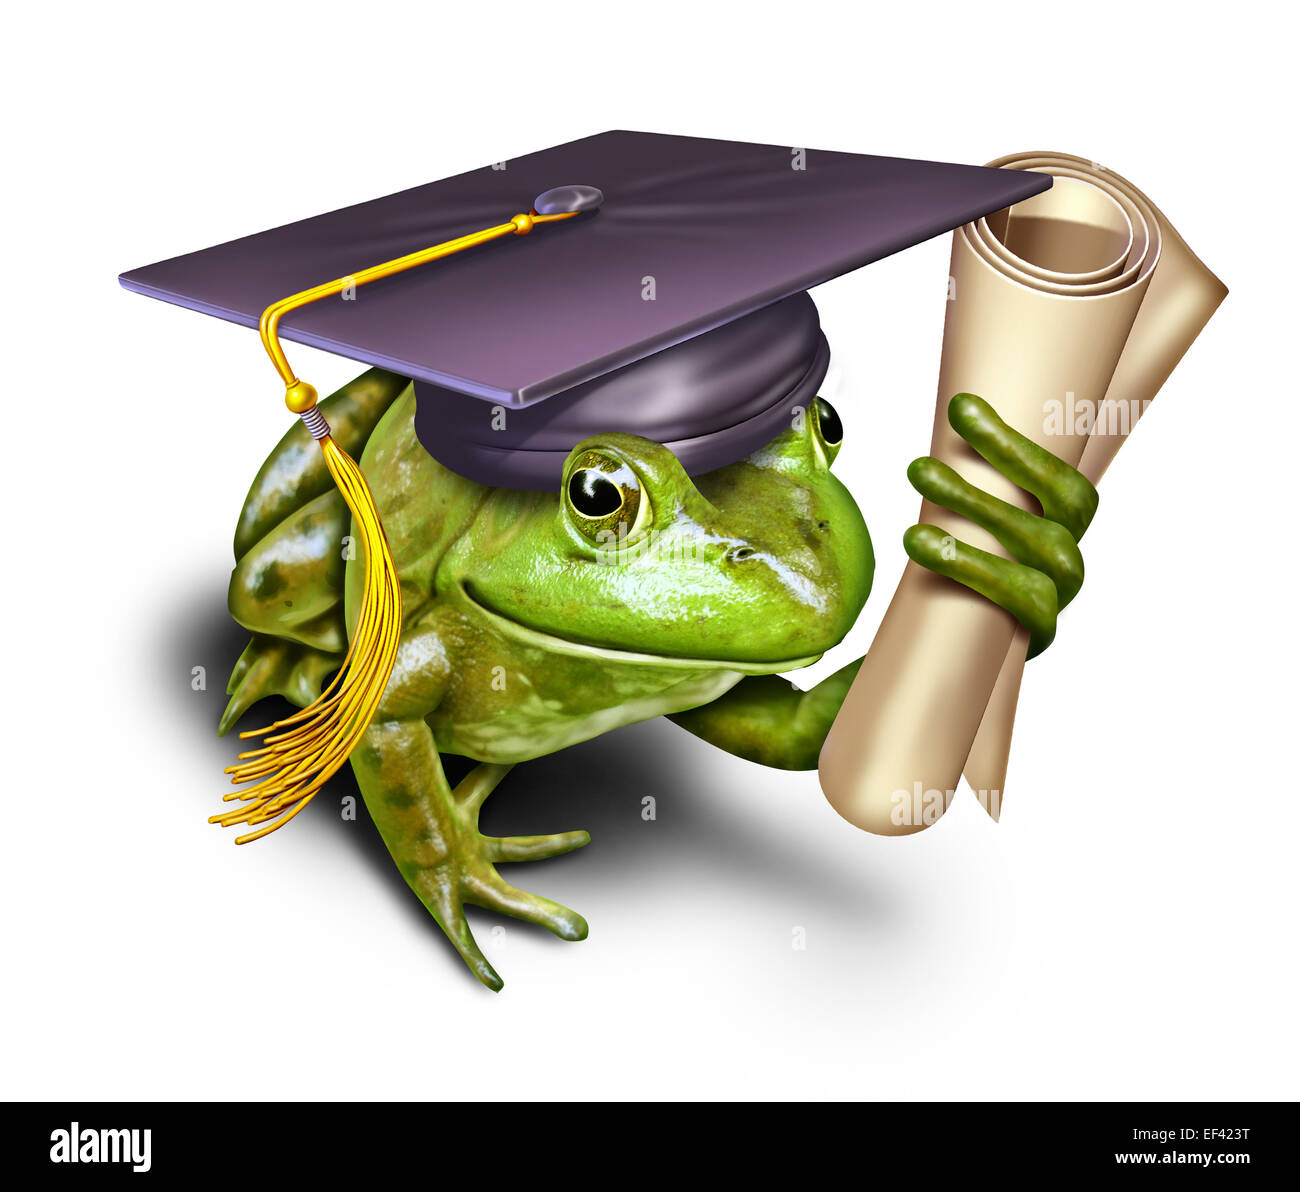 Symbole d'éducation à l'environnement comme une grenouille verte portant une graduation des étudiants titulaires d'un cap de mortier ou d'études secondaires comme une métaphore pour la conservation de l'apprentissage et le respect de la nature. Banque D'Images